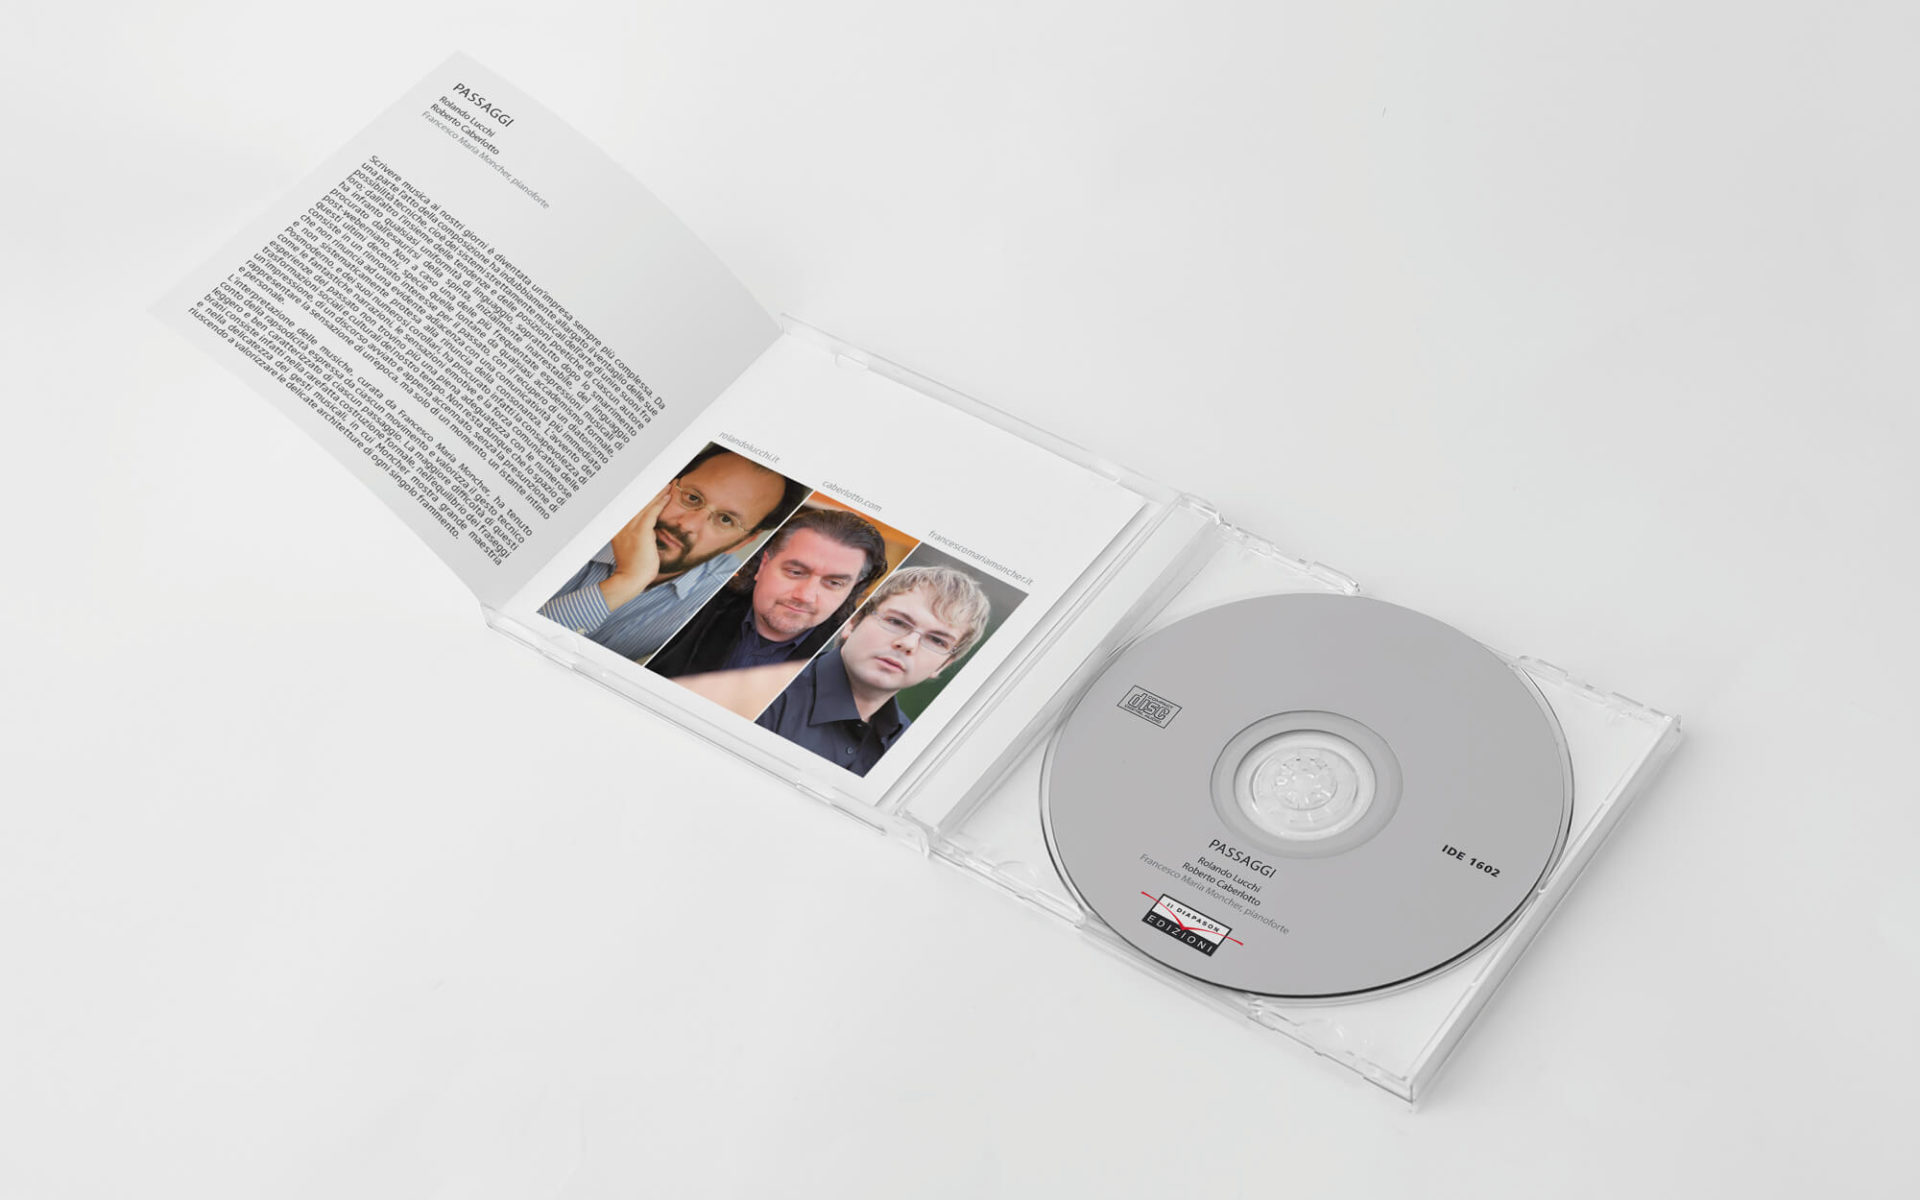 interno-juwelbox-cd-passaggi-rolando-lucchi-progetto-diadestudio-arco-trento